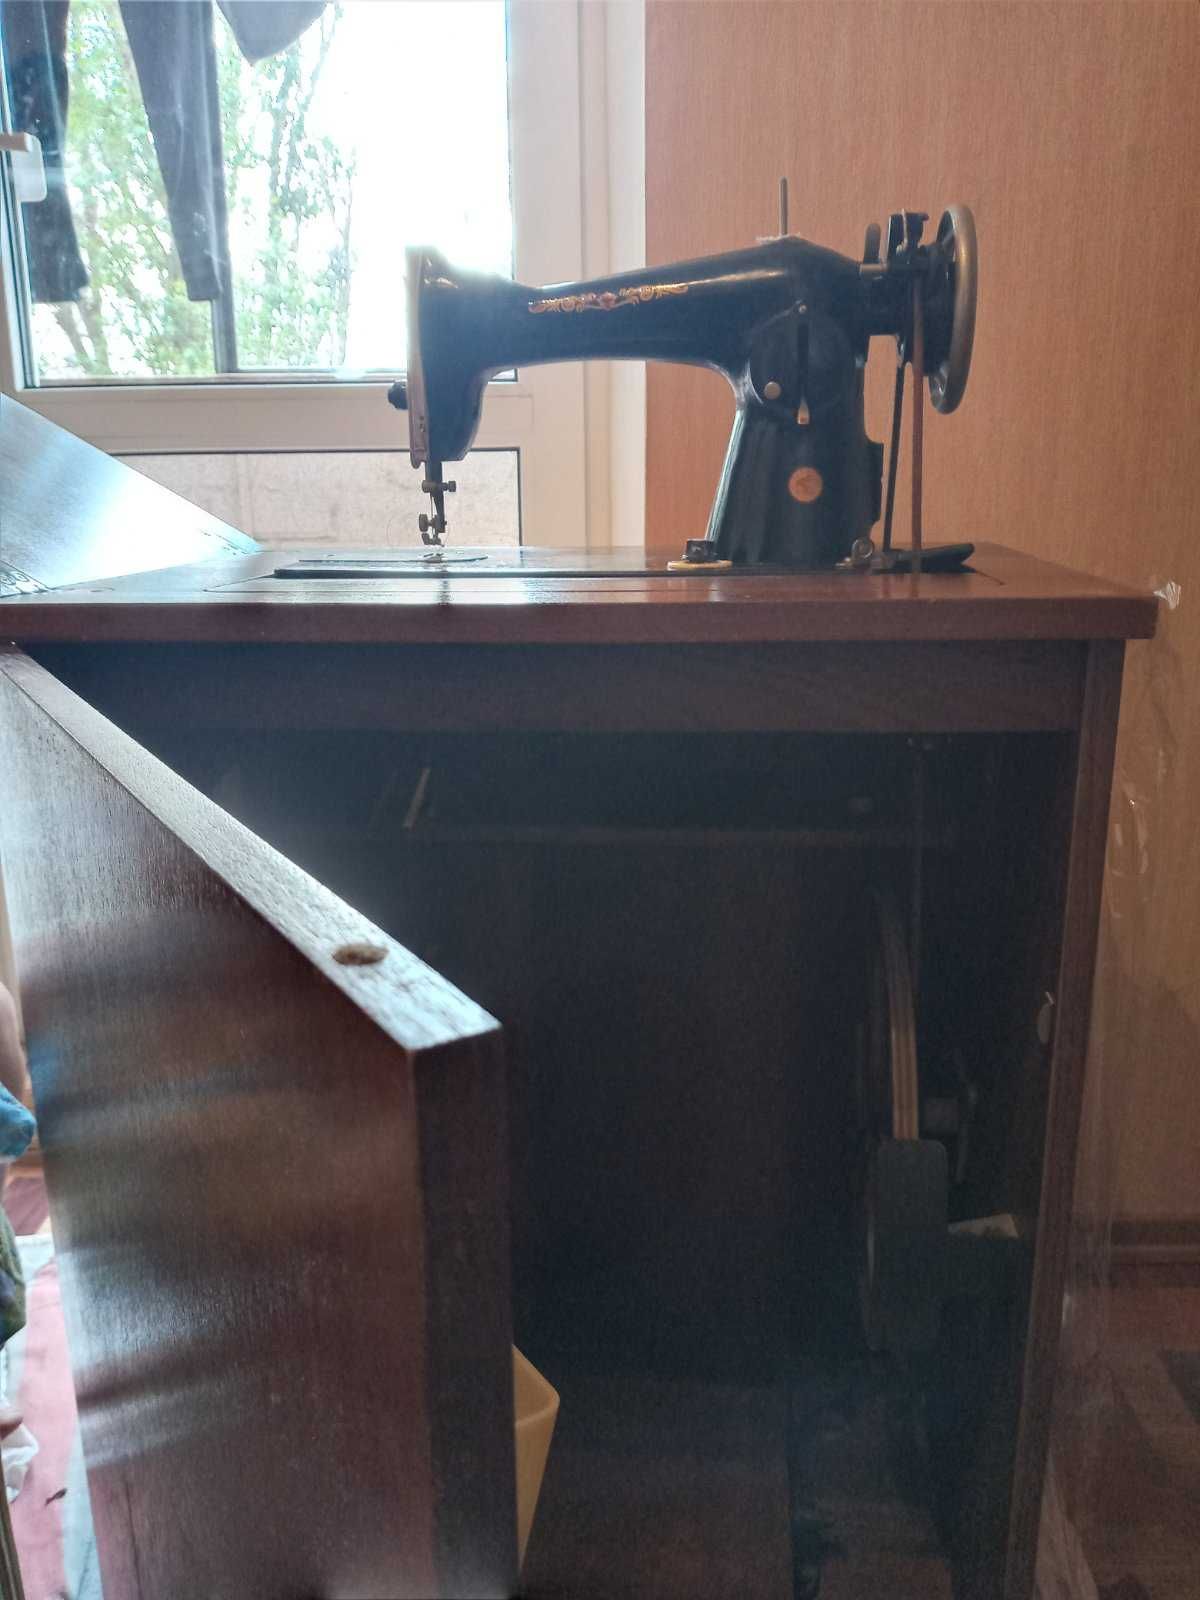 Швейная машинка Подольск с ножным приводом на тумбе